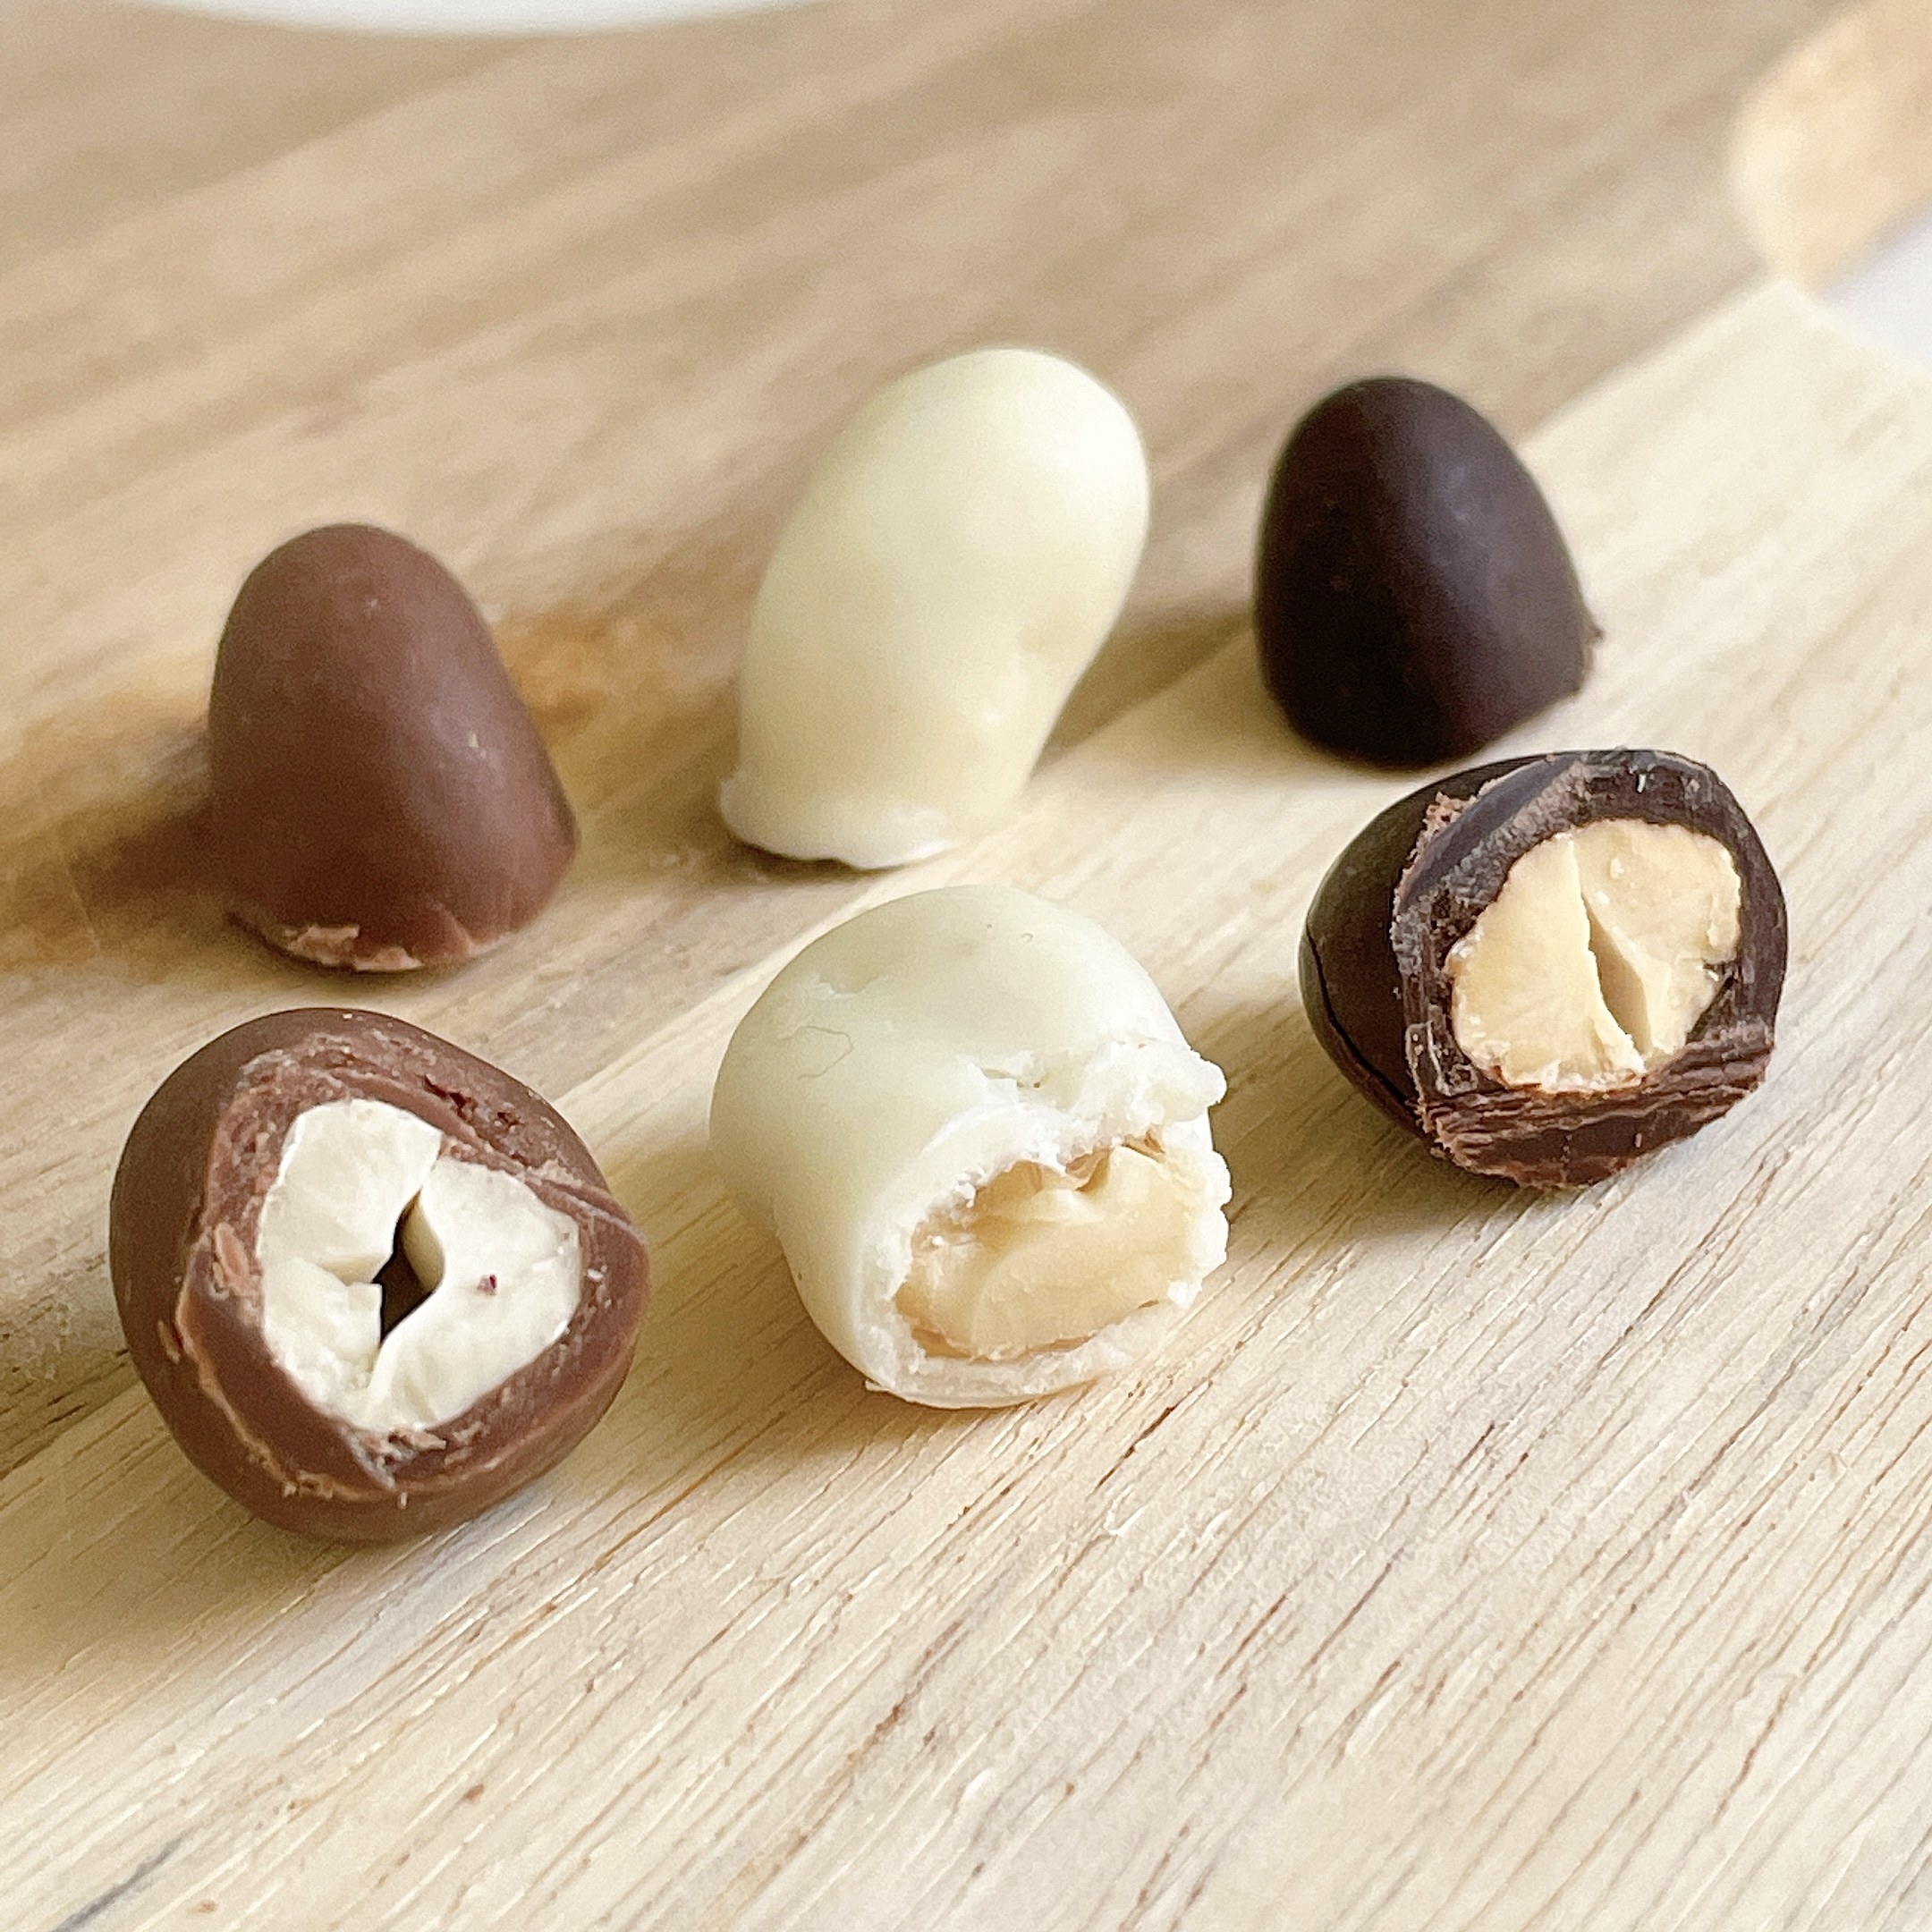 無印良品のおすすめのおかし「3種のチョコがけミックスナッツ」